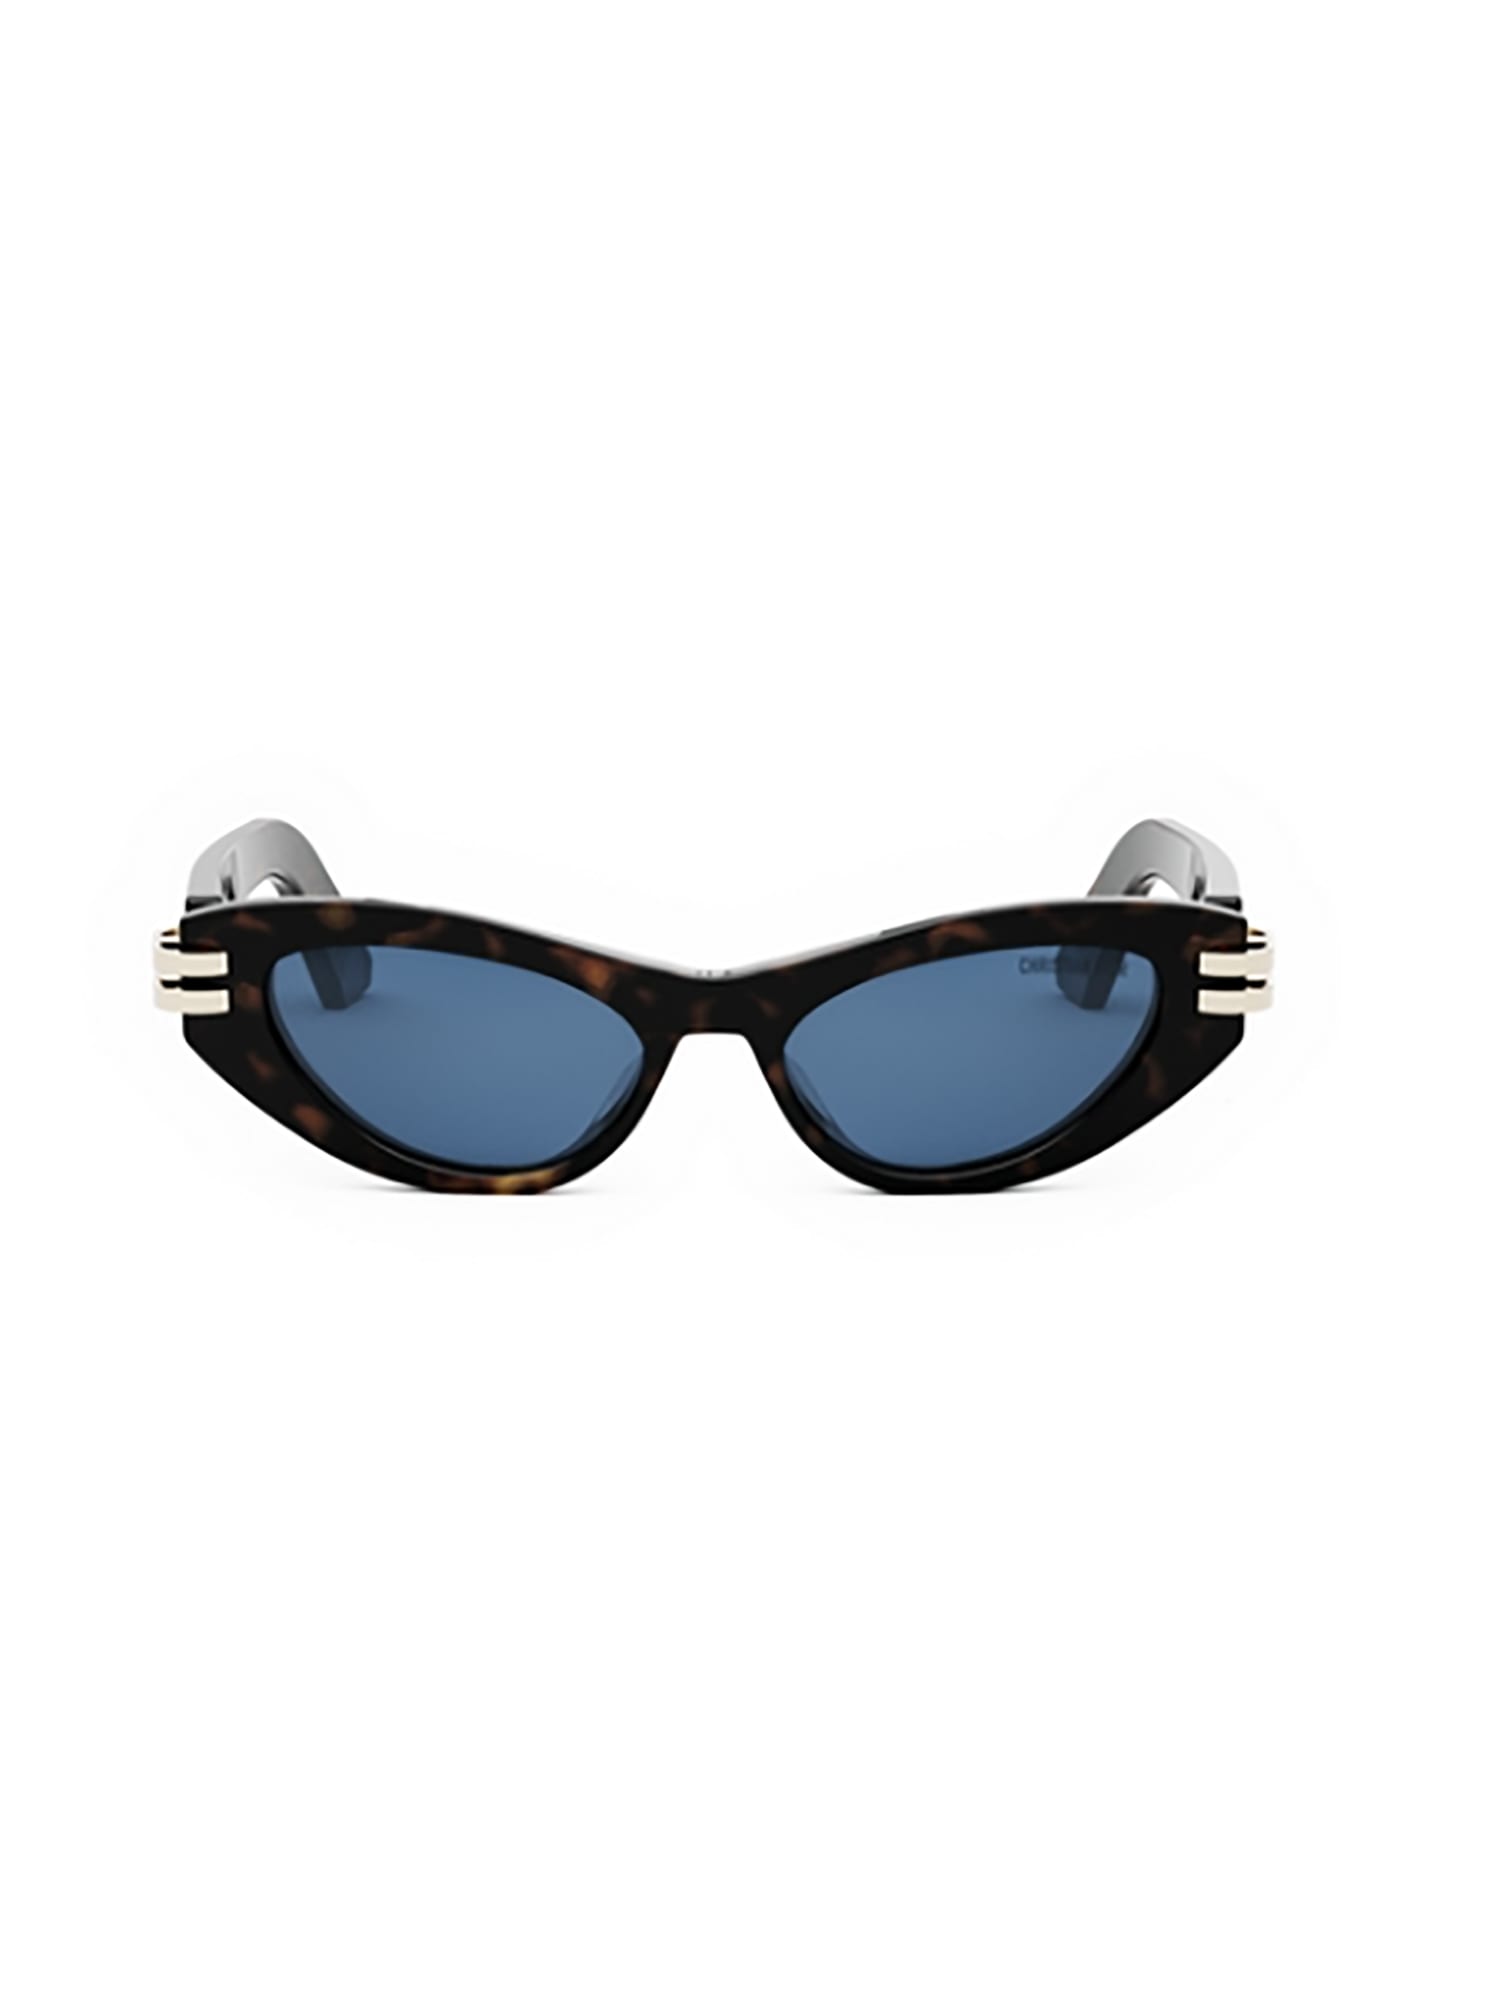 Dior C B1u Sunglasses In Black